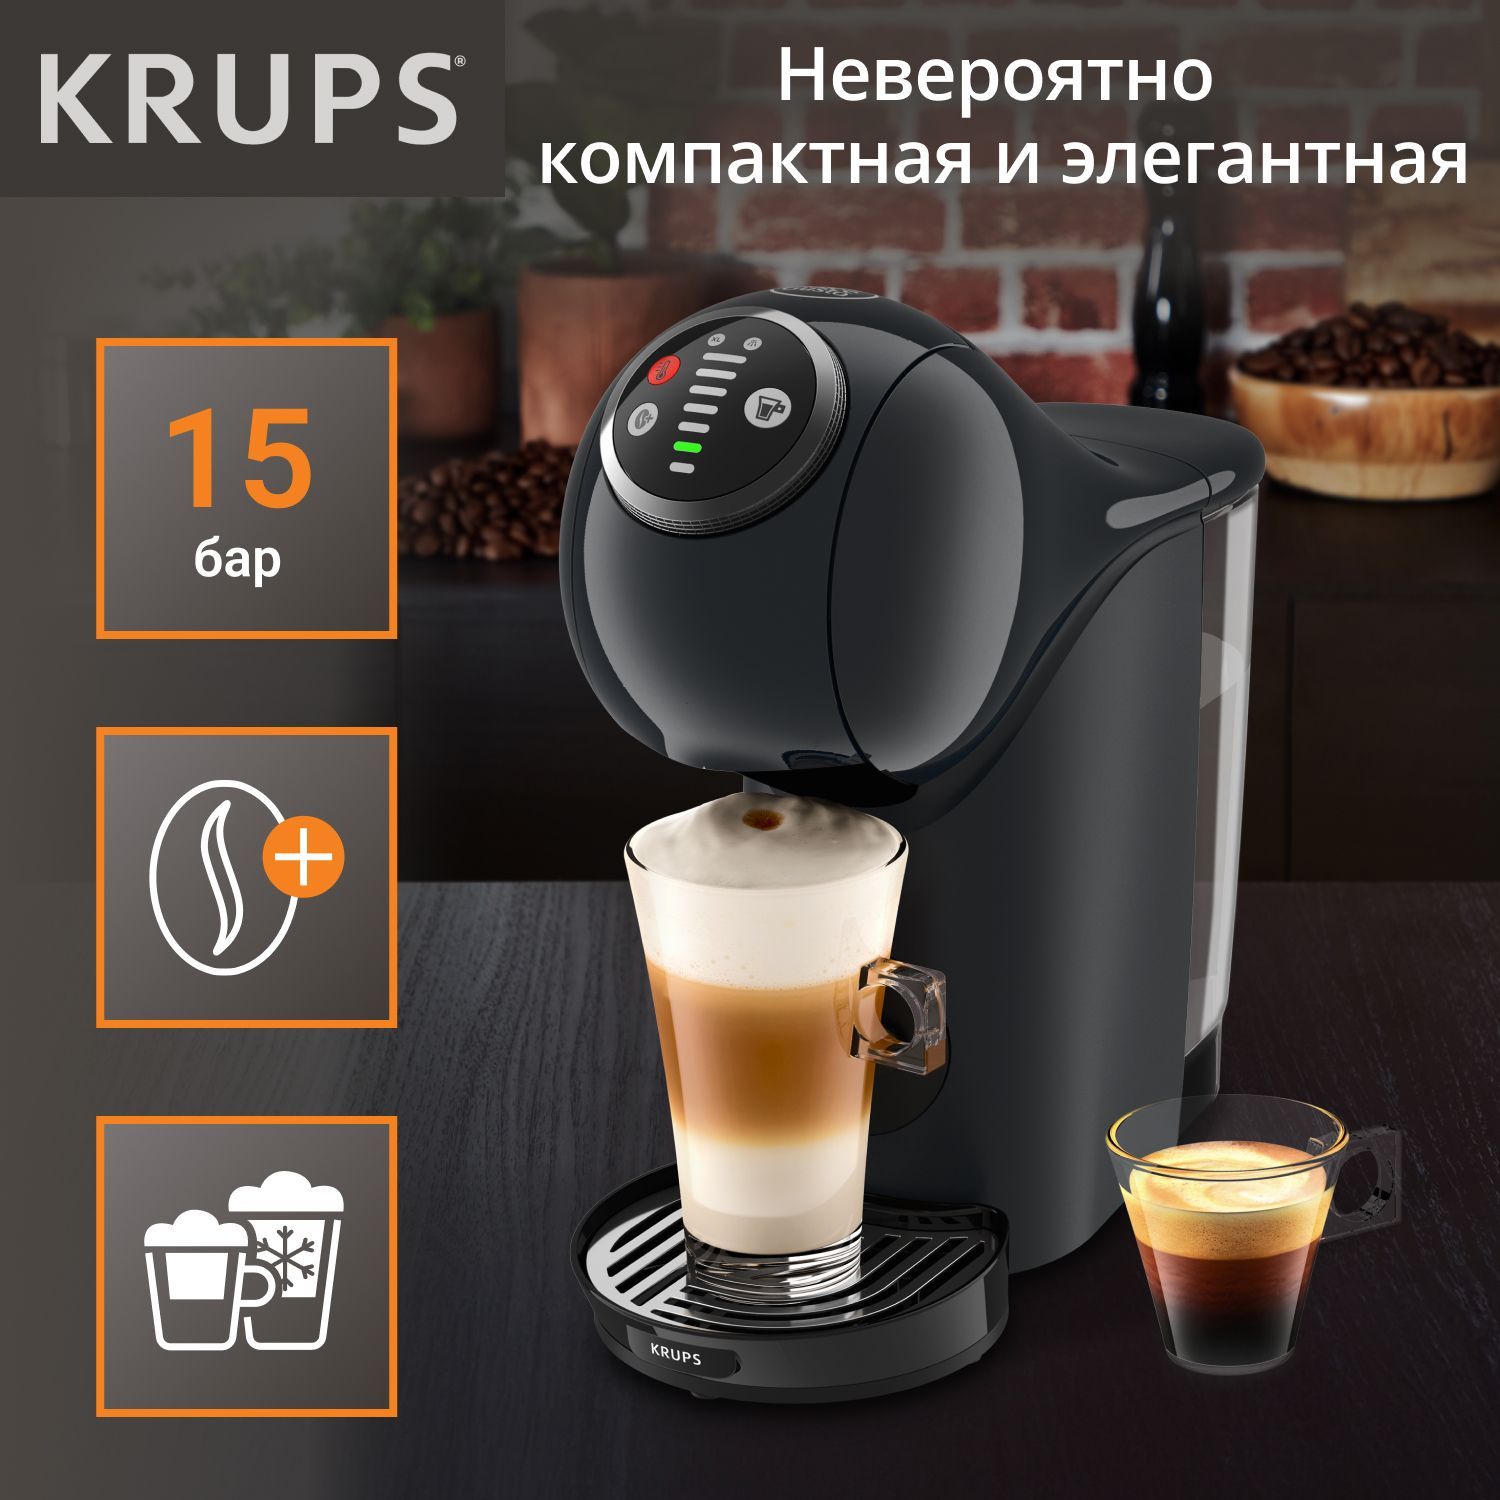 Кофеварка Капсульная Dolce – Nescafe Kp340810 купить цене низкой Genio Plus Gusto Krups в интернет-магазине S OZON по